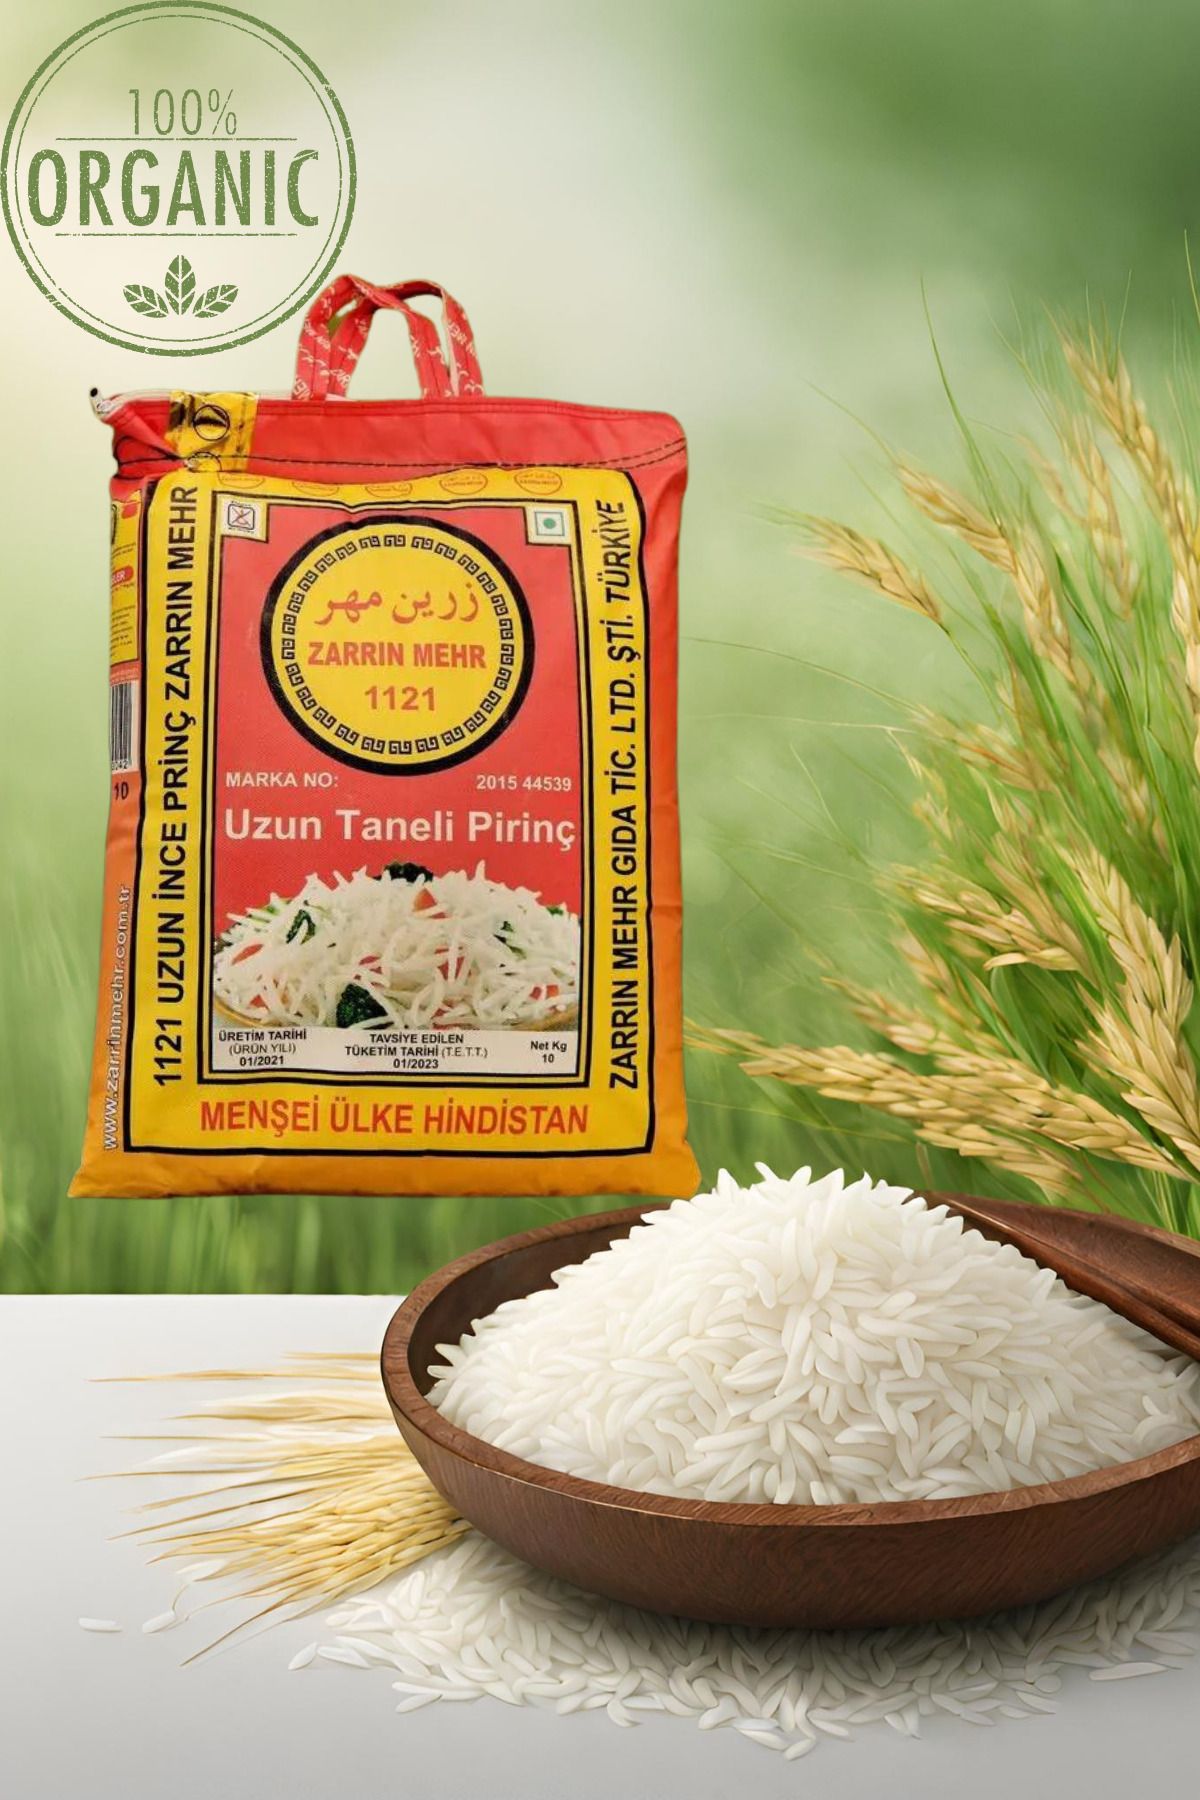 Zarrin Mehr Zarrin Mahr 1121 Basmati Pirinç. Hint Iran Rice. Uzun Taneli Pirinç